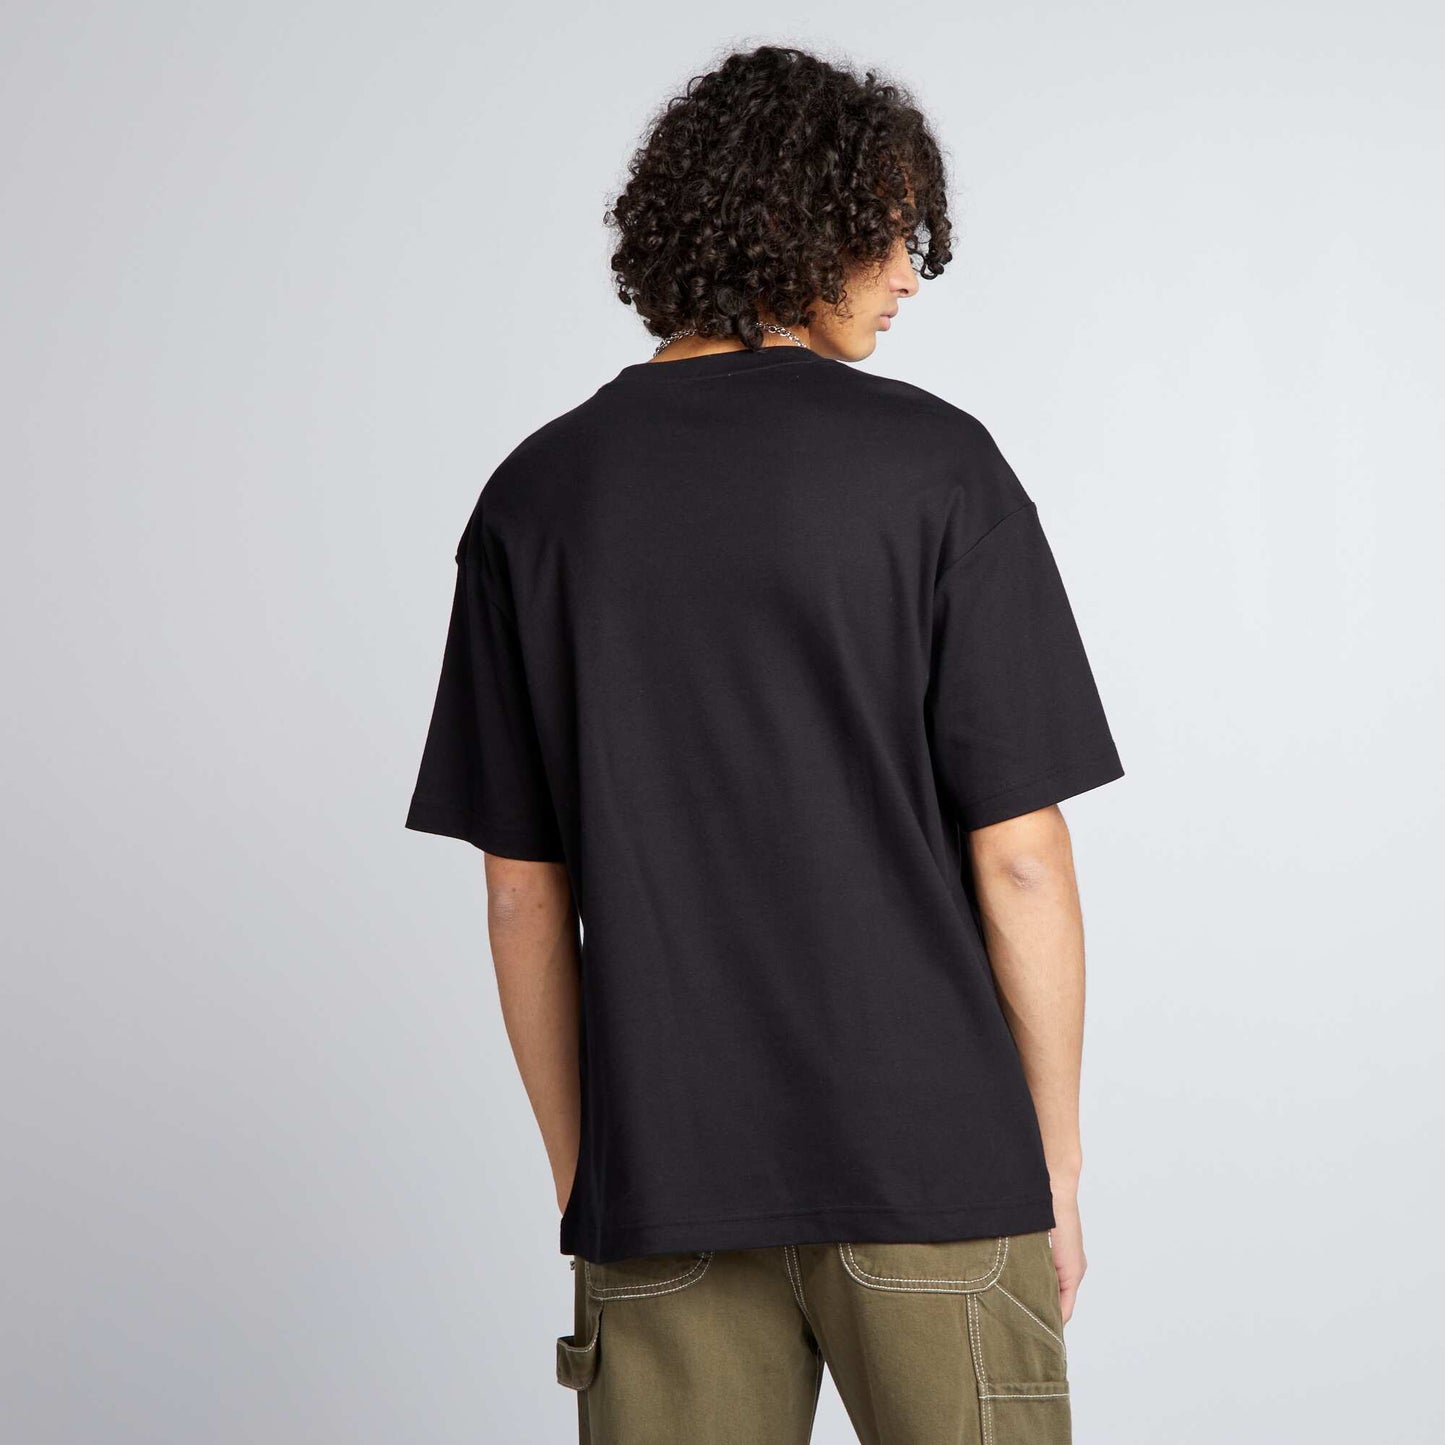 Round neck cotton T-shirt black